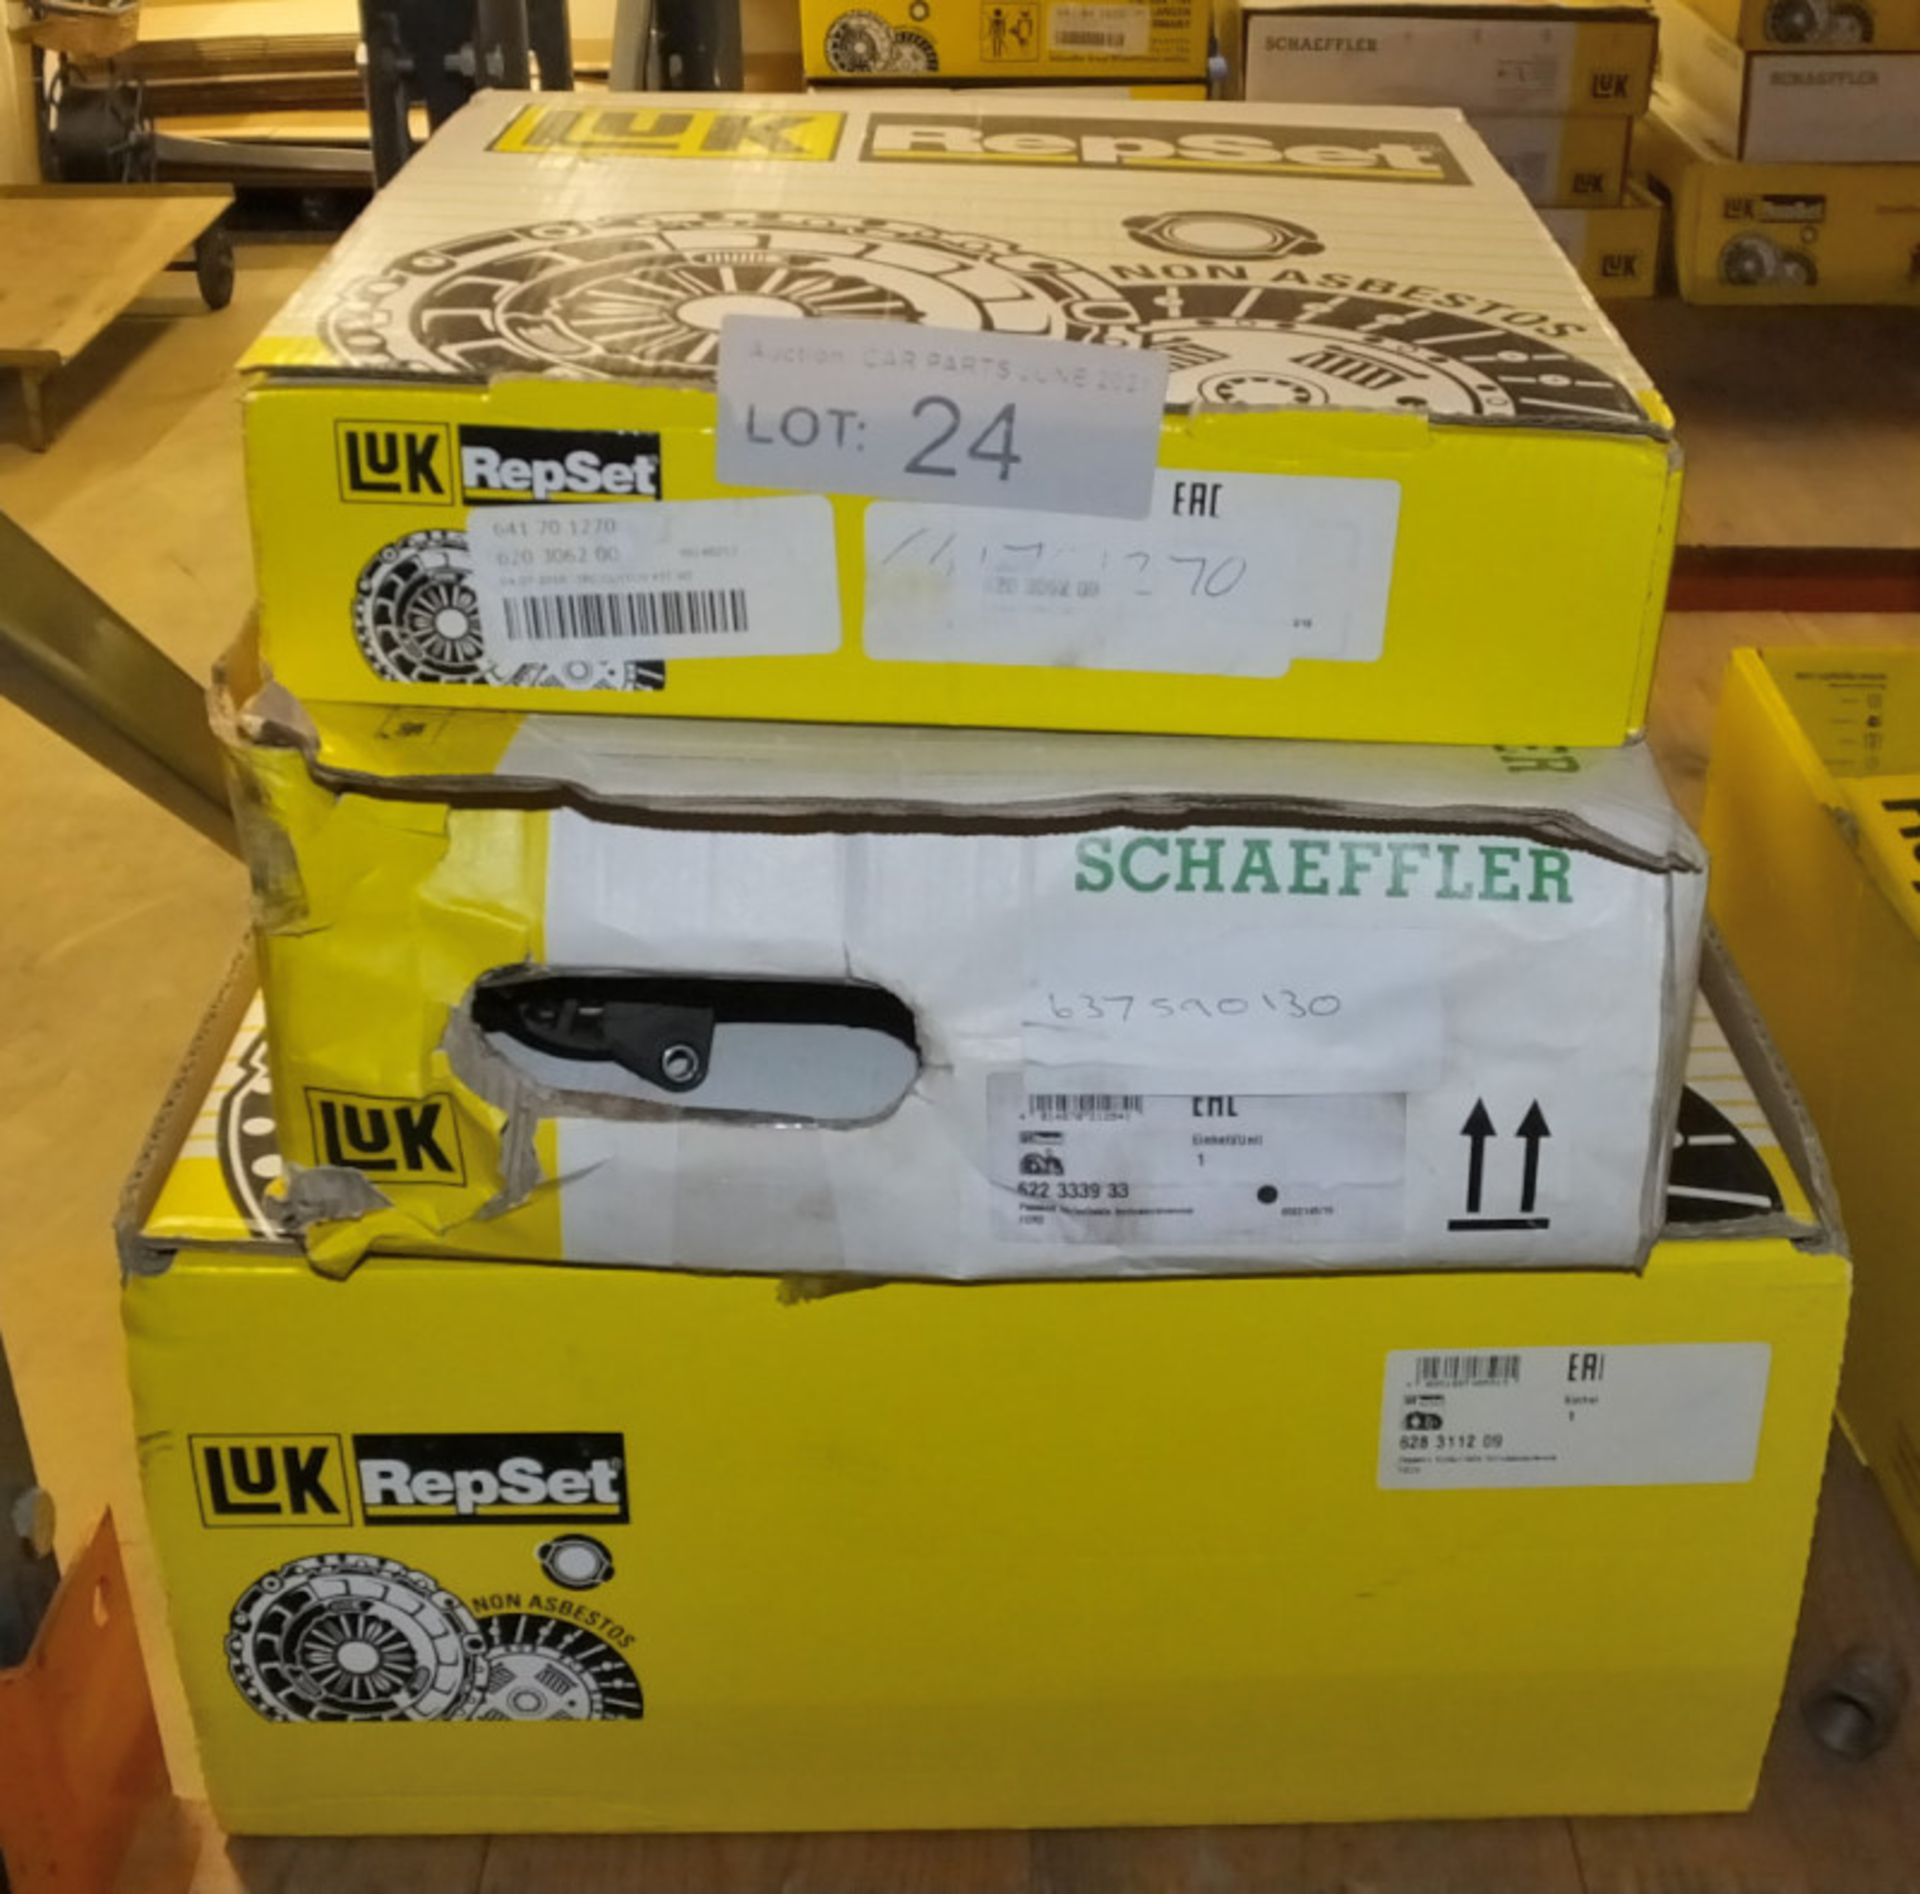 3x LUK Repset Clutch Kits (1x Schaeffler) - Models - 641 70 1270, 622 3339 33/637590130 &